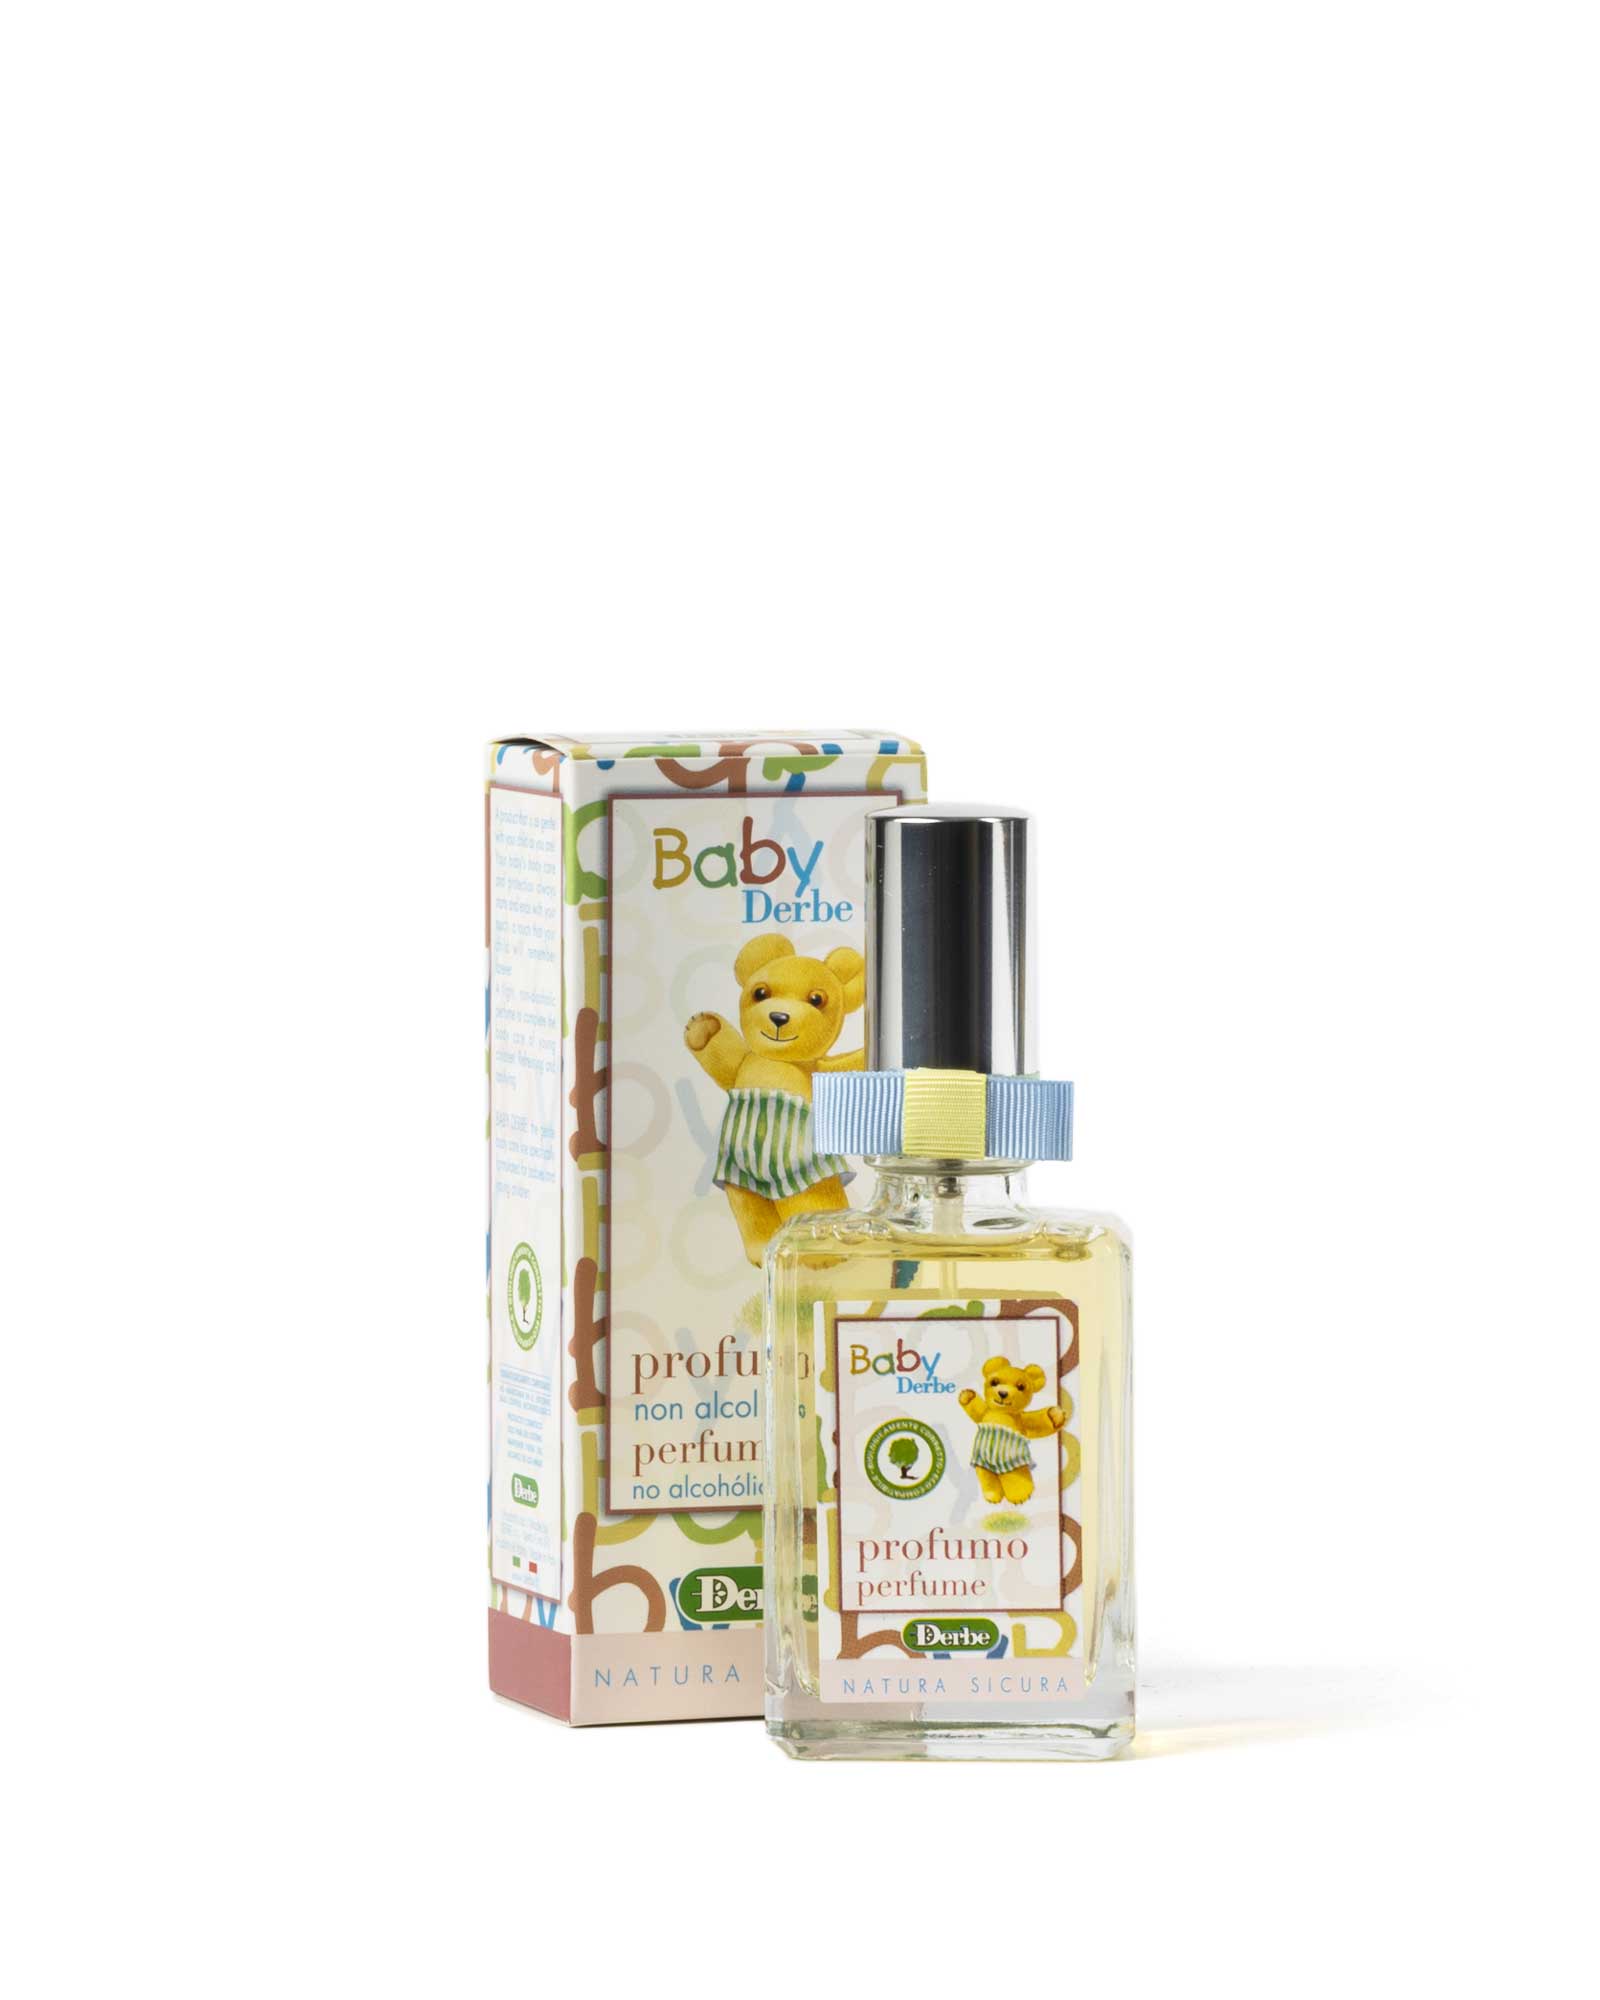 Non-alcoholic perfume for children – Derbe